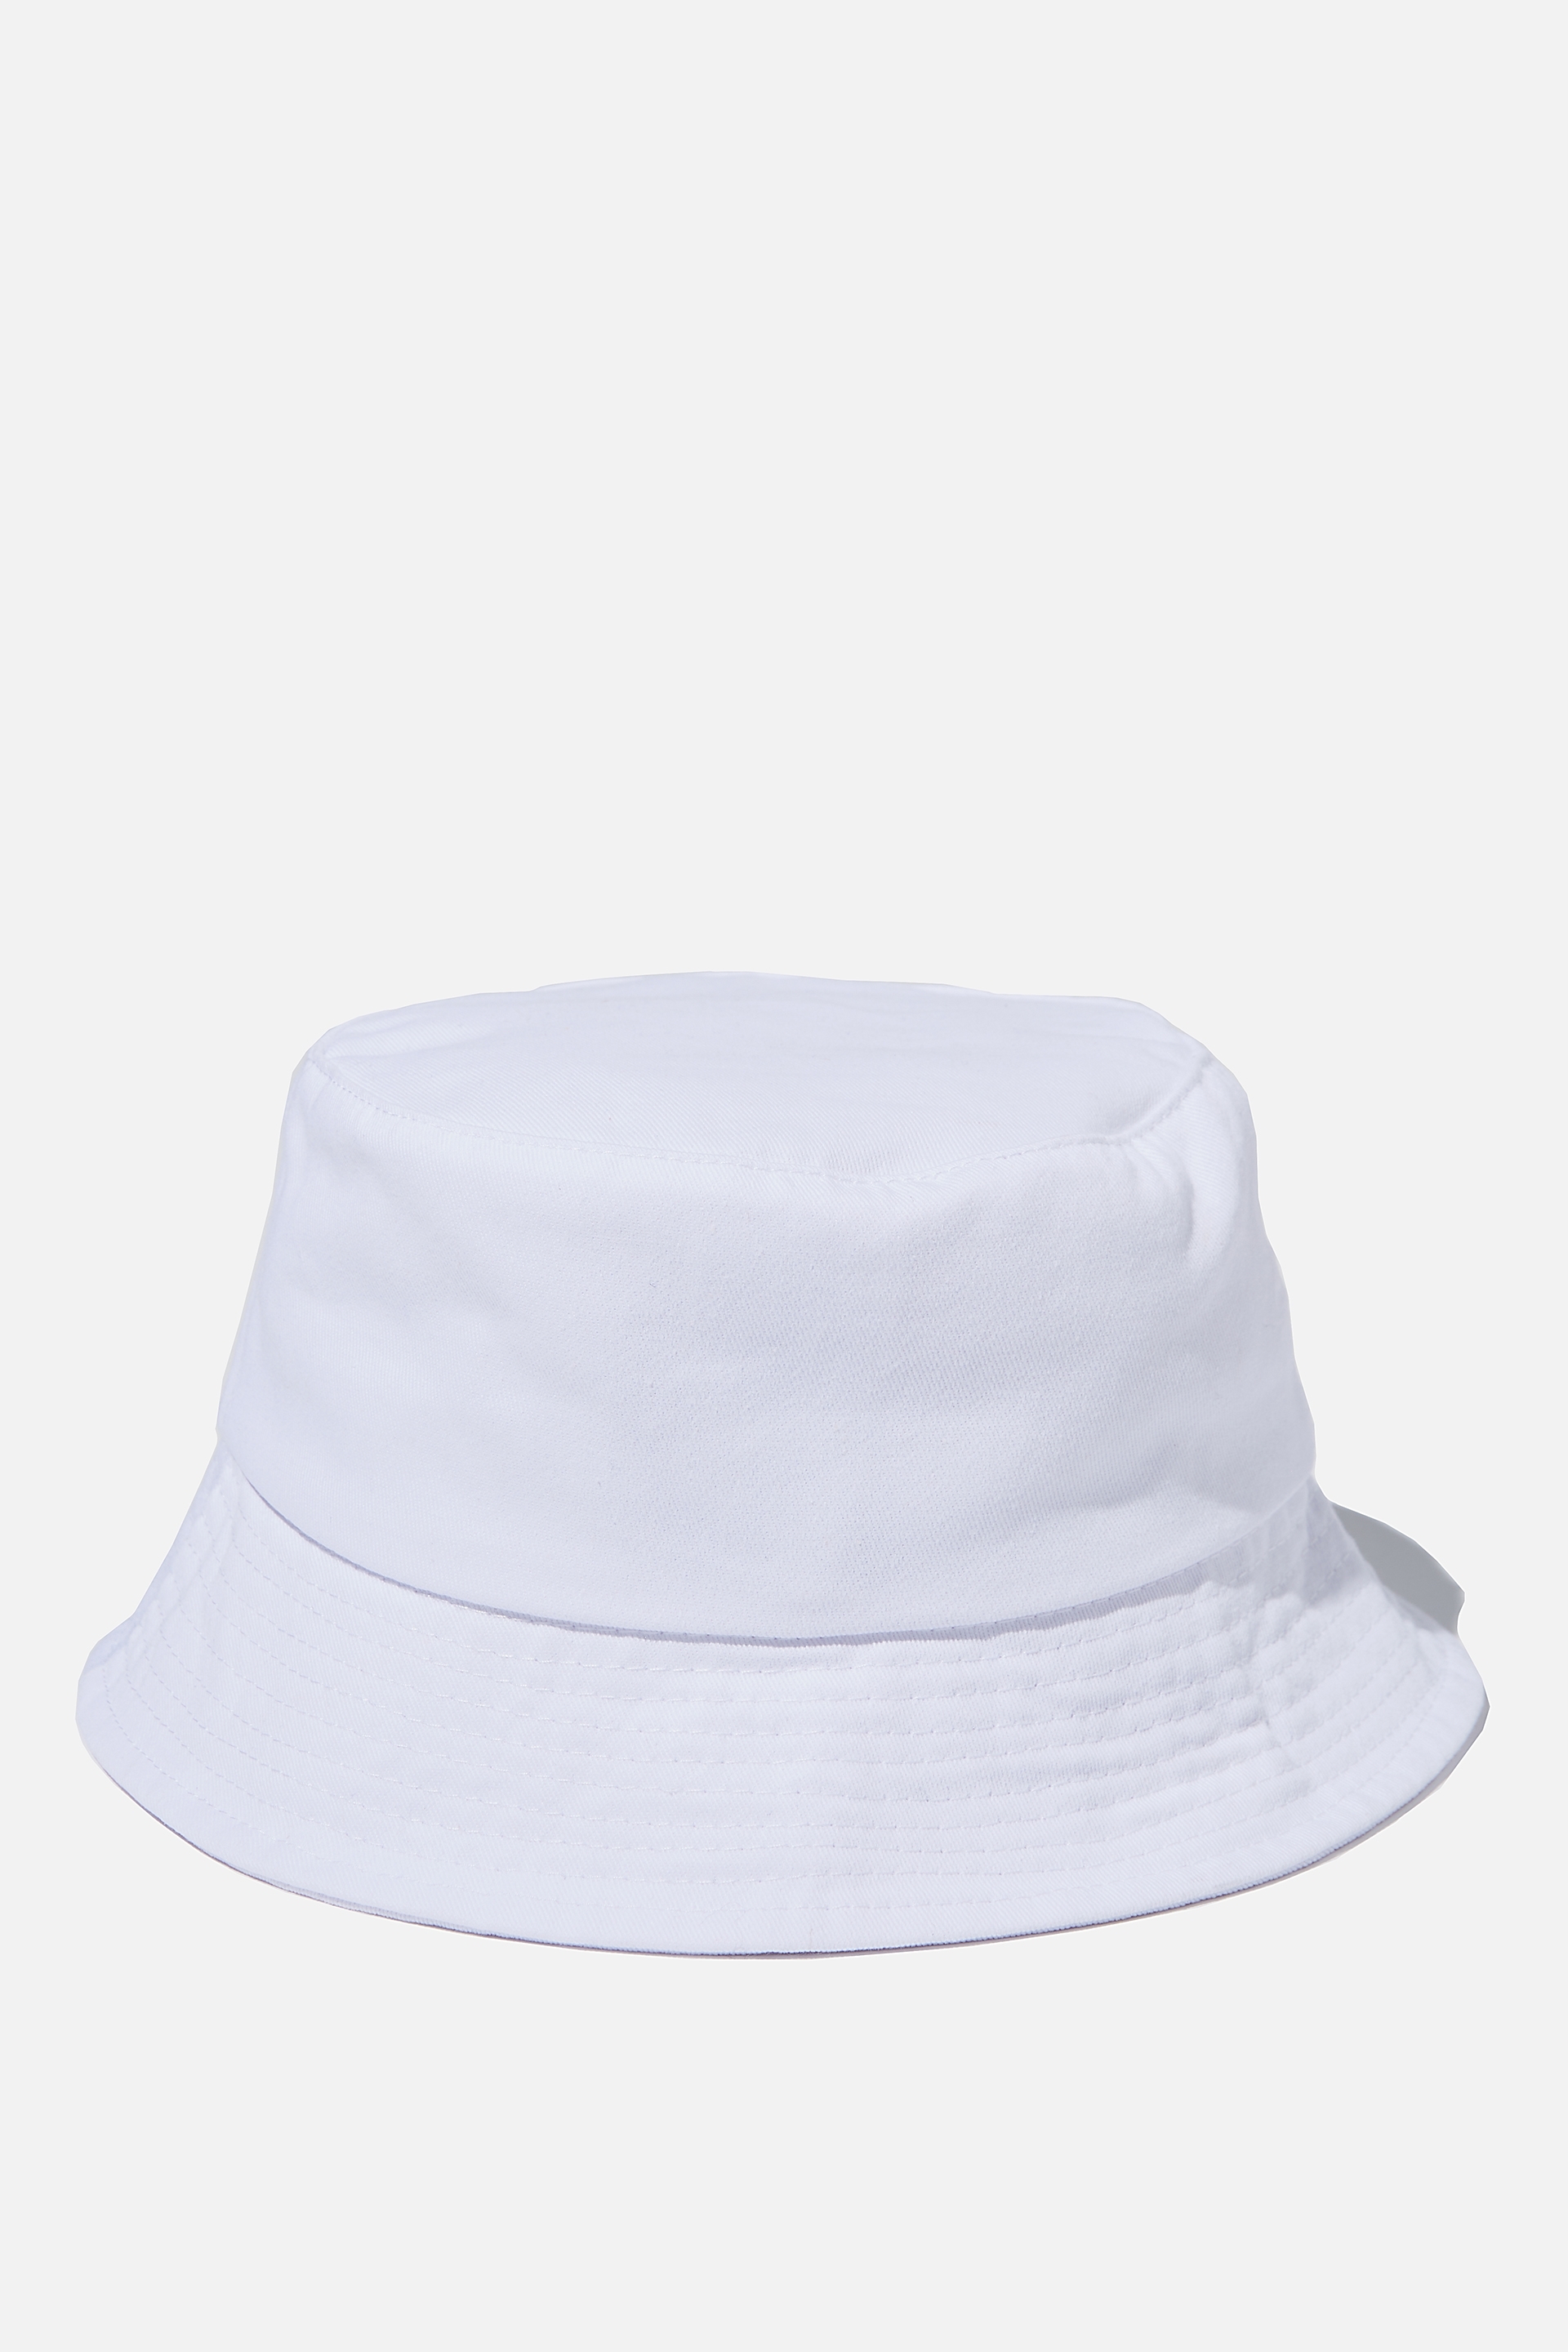 Factorie - Bucket Hat - White